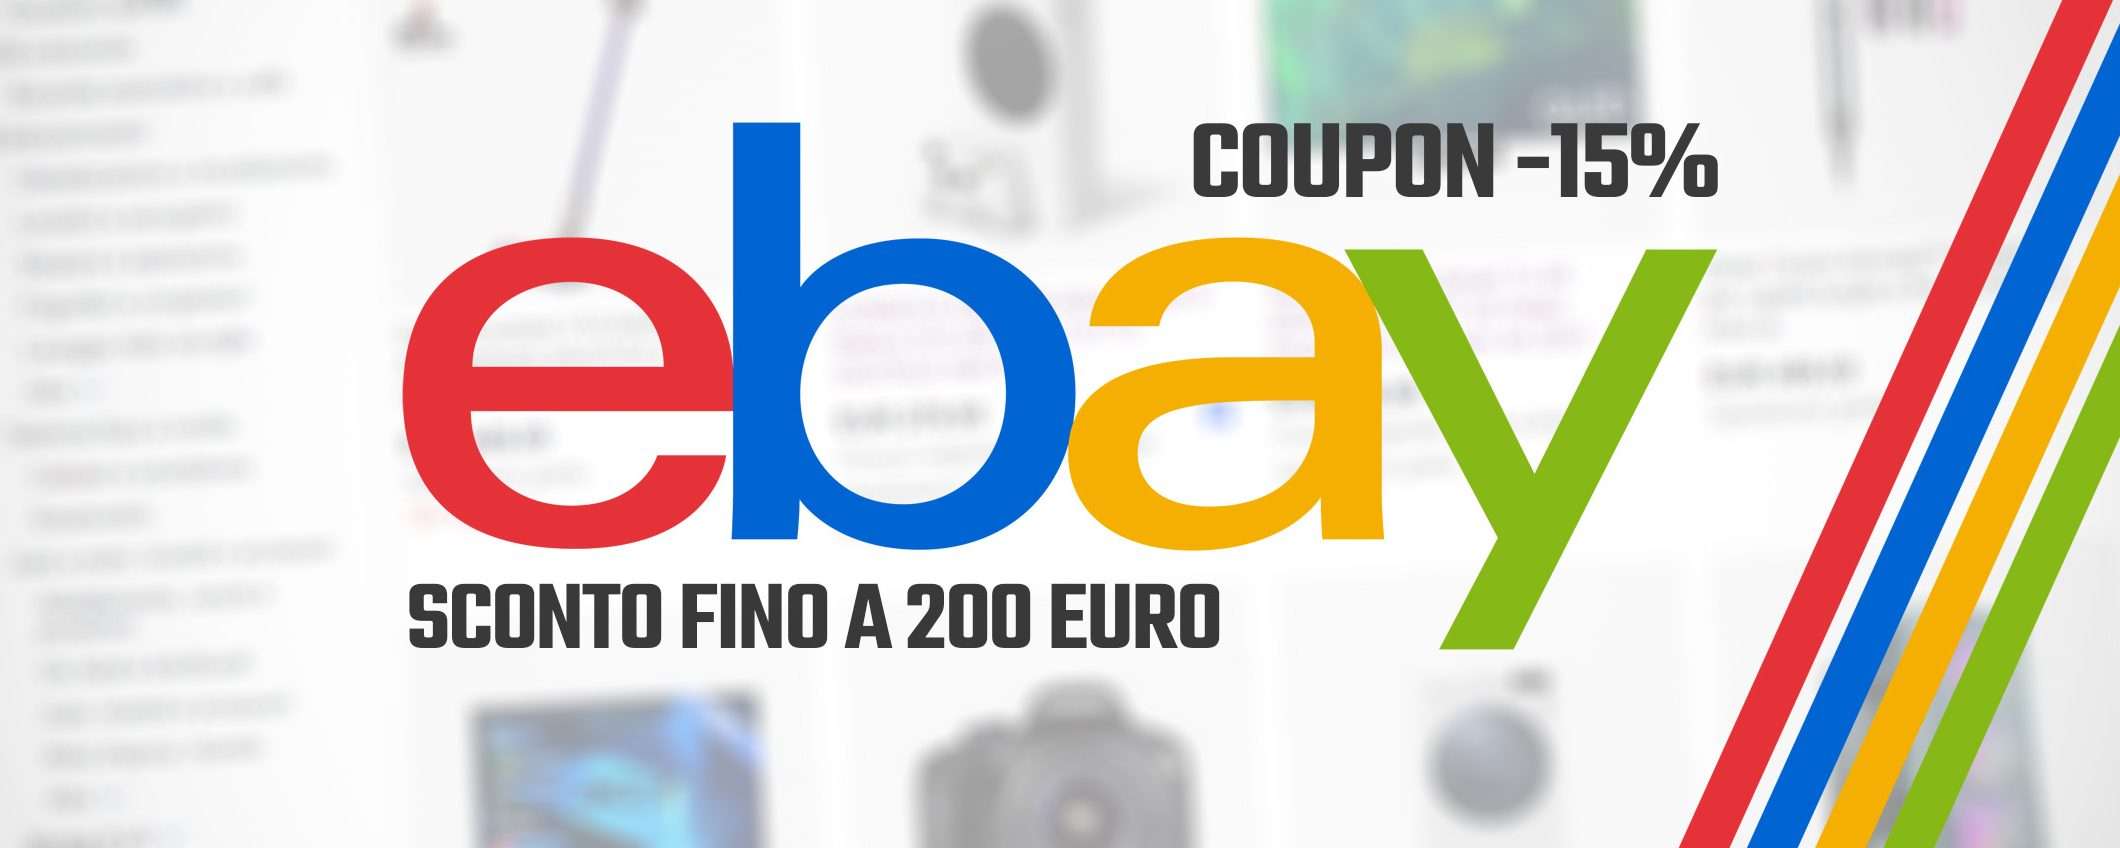 Le migliori offerte del giorno su eBay (coupon -15%)